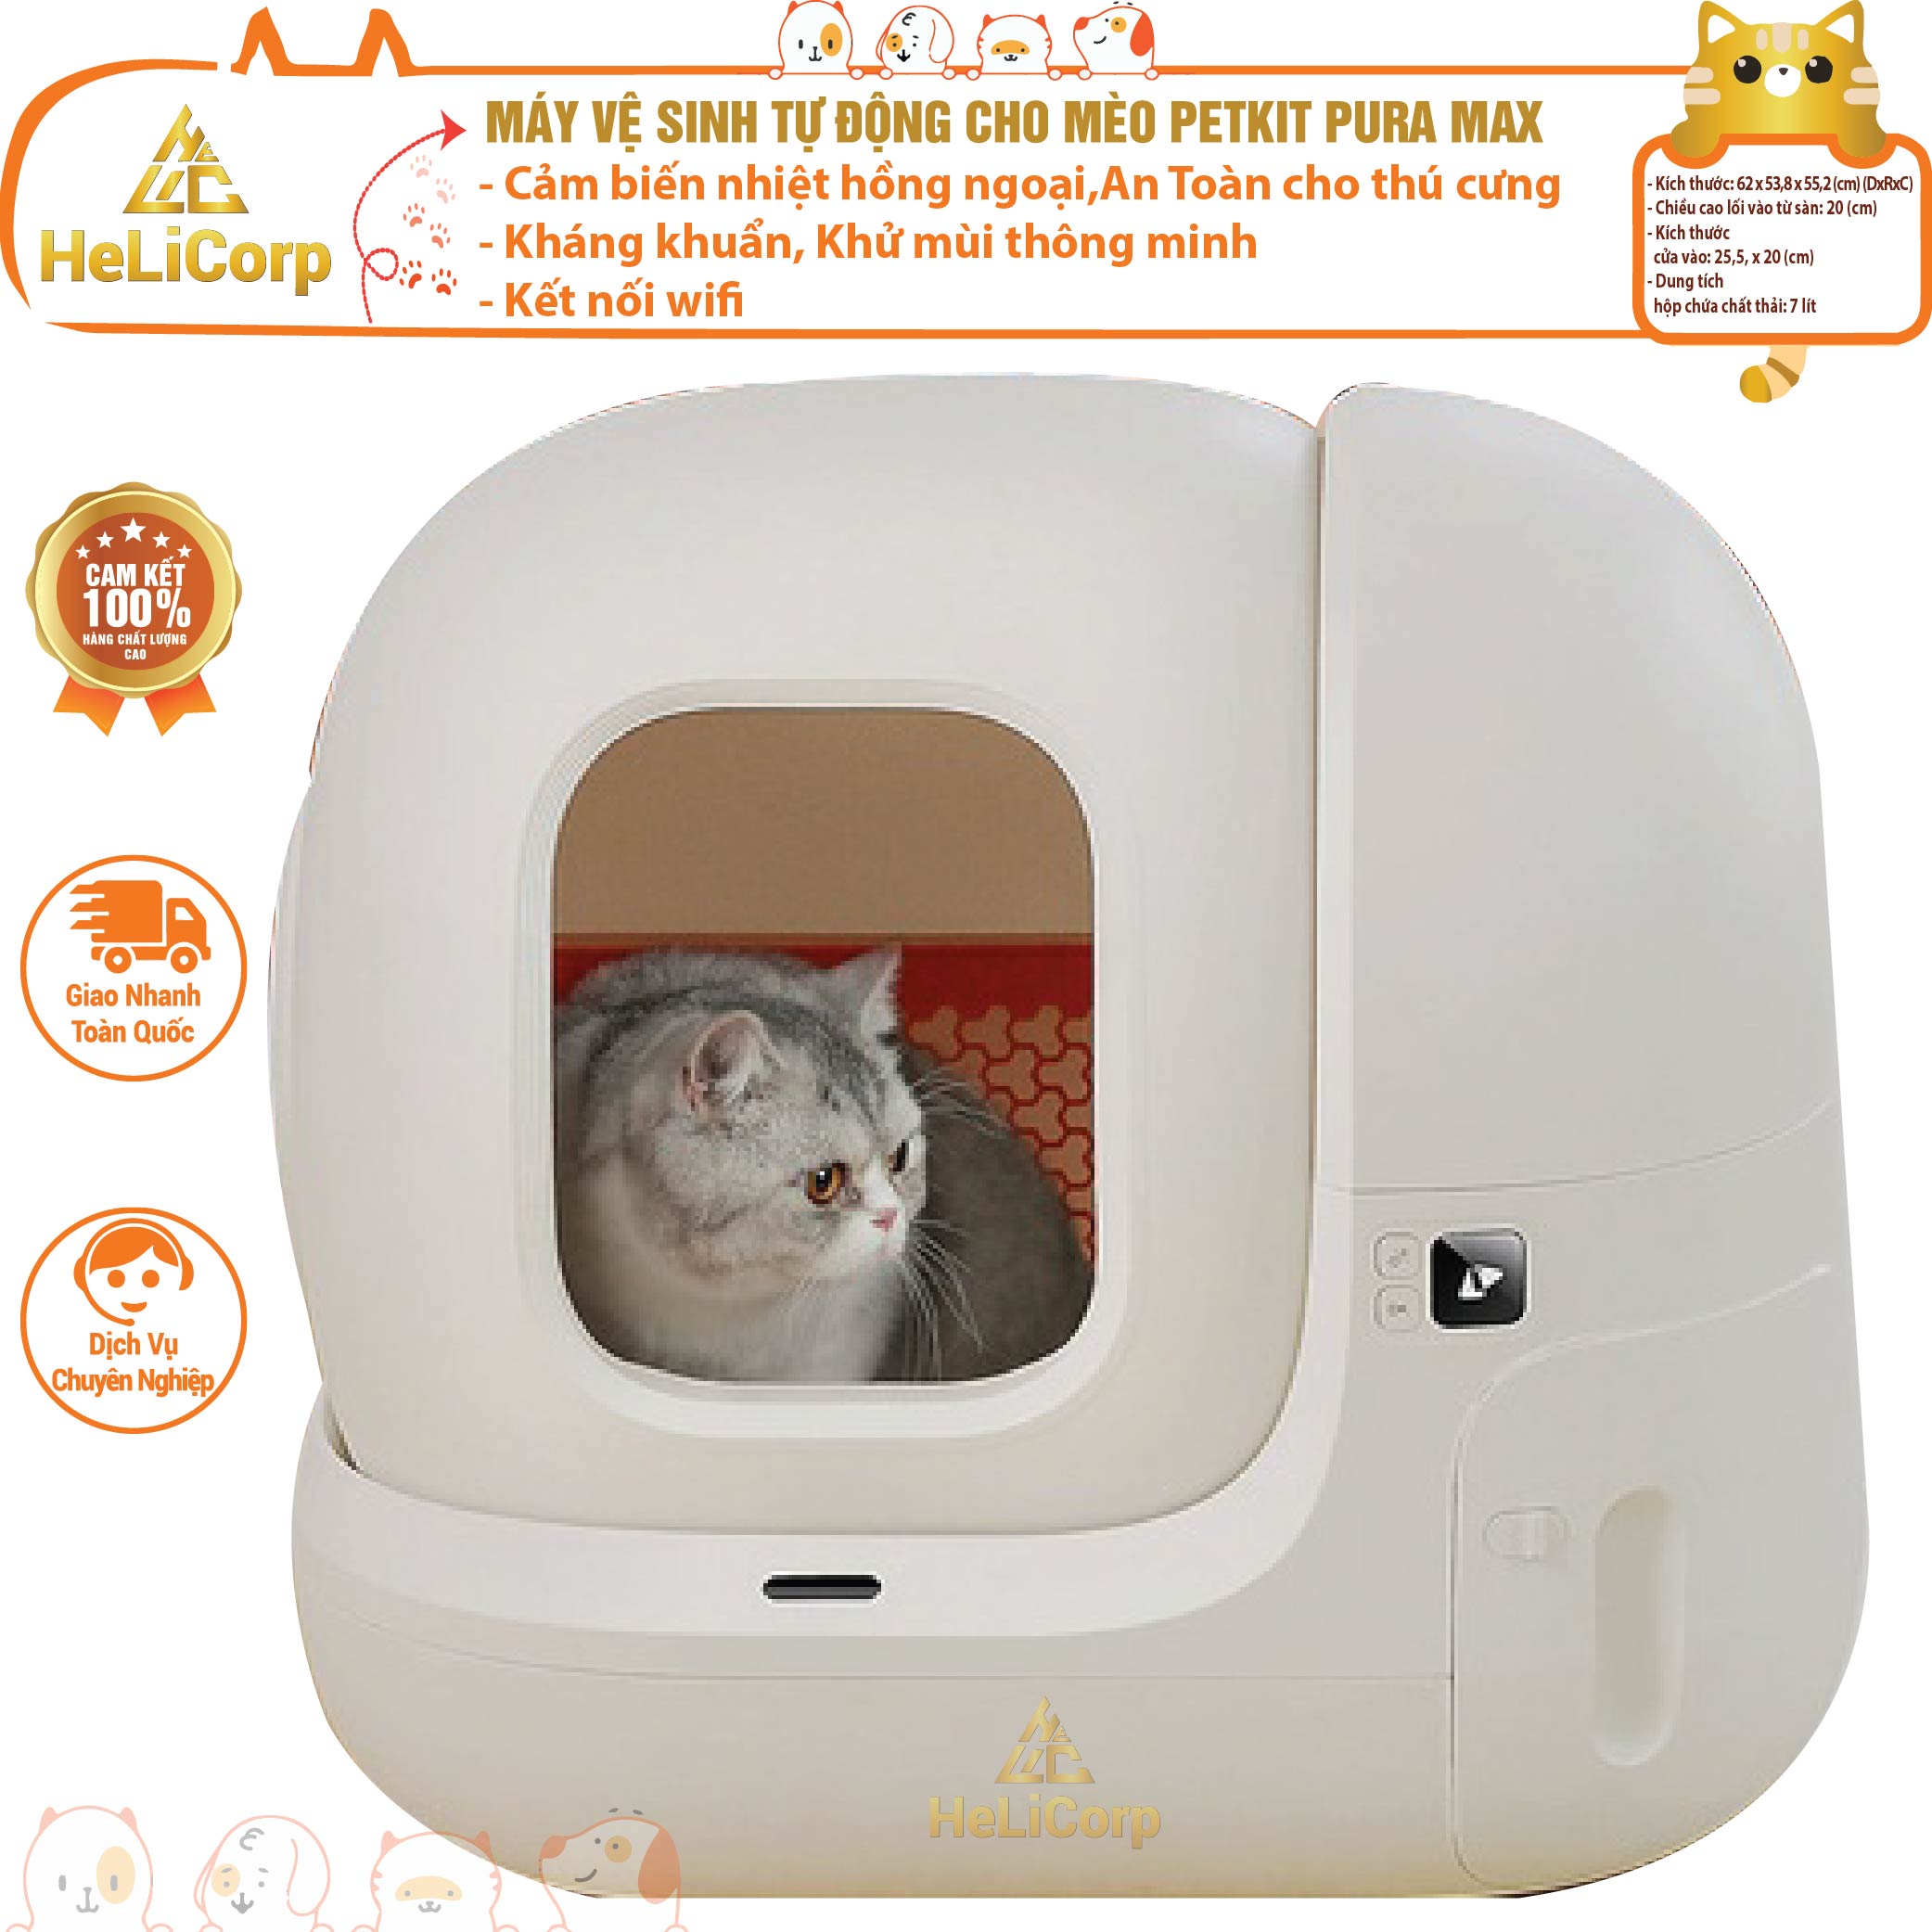 Máy Vệ Sinh Tự Động Cho Mèo PETKIT PURA MAX Kháng Khuẩn, Khử Mùi